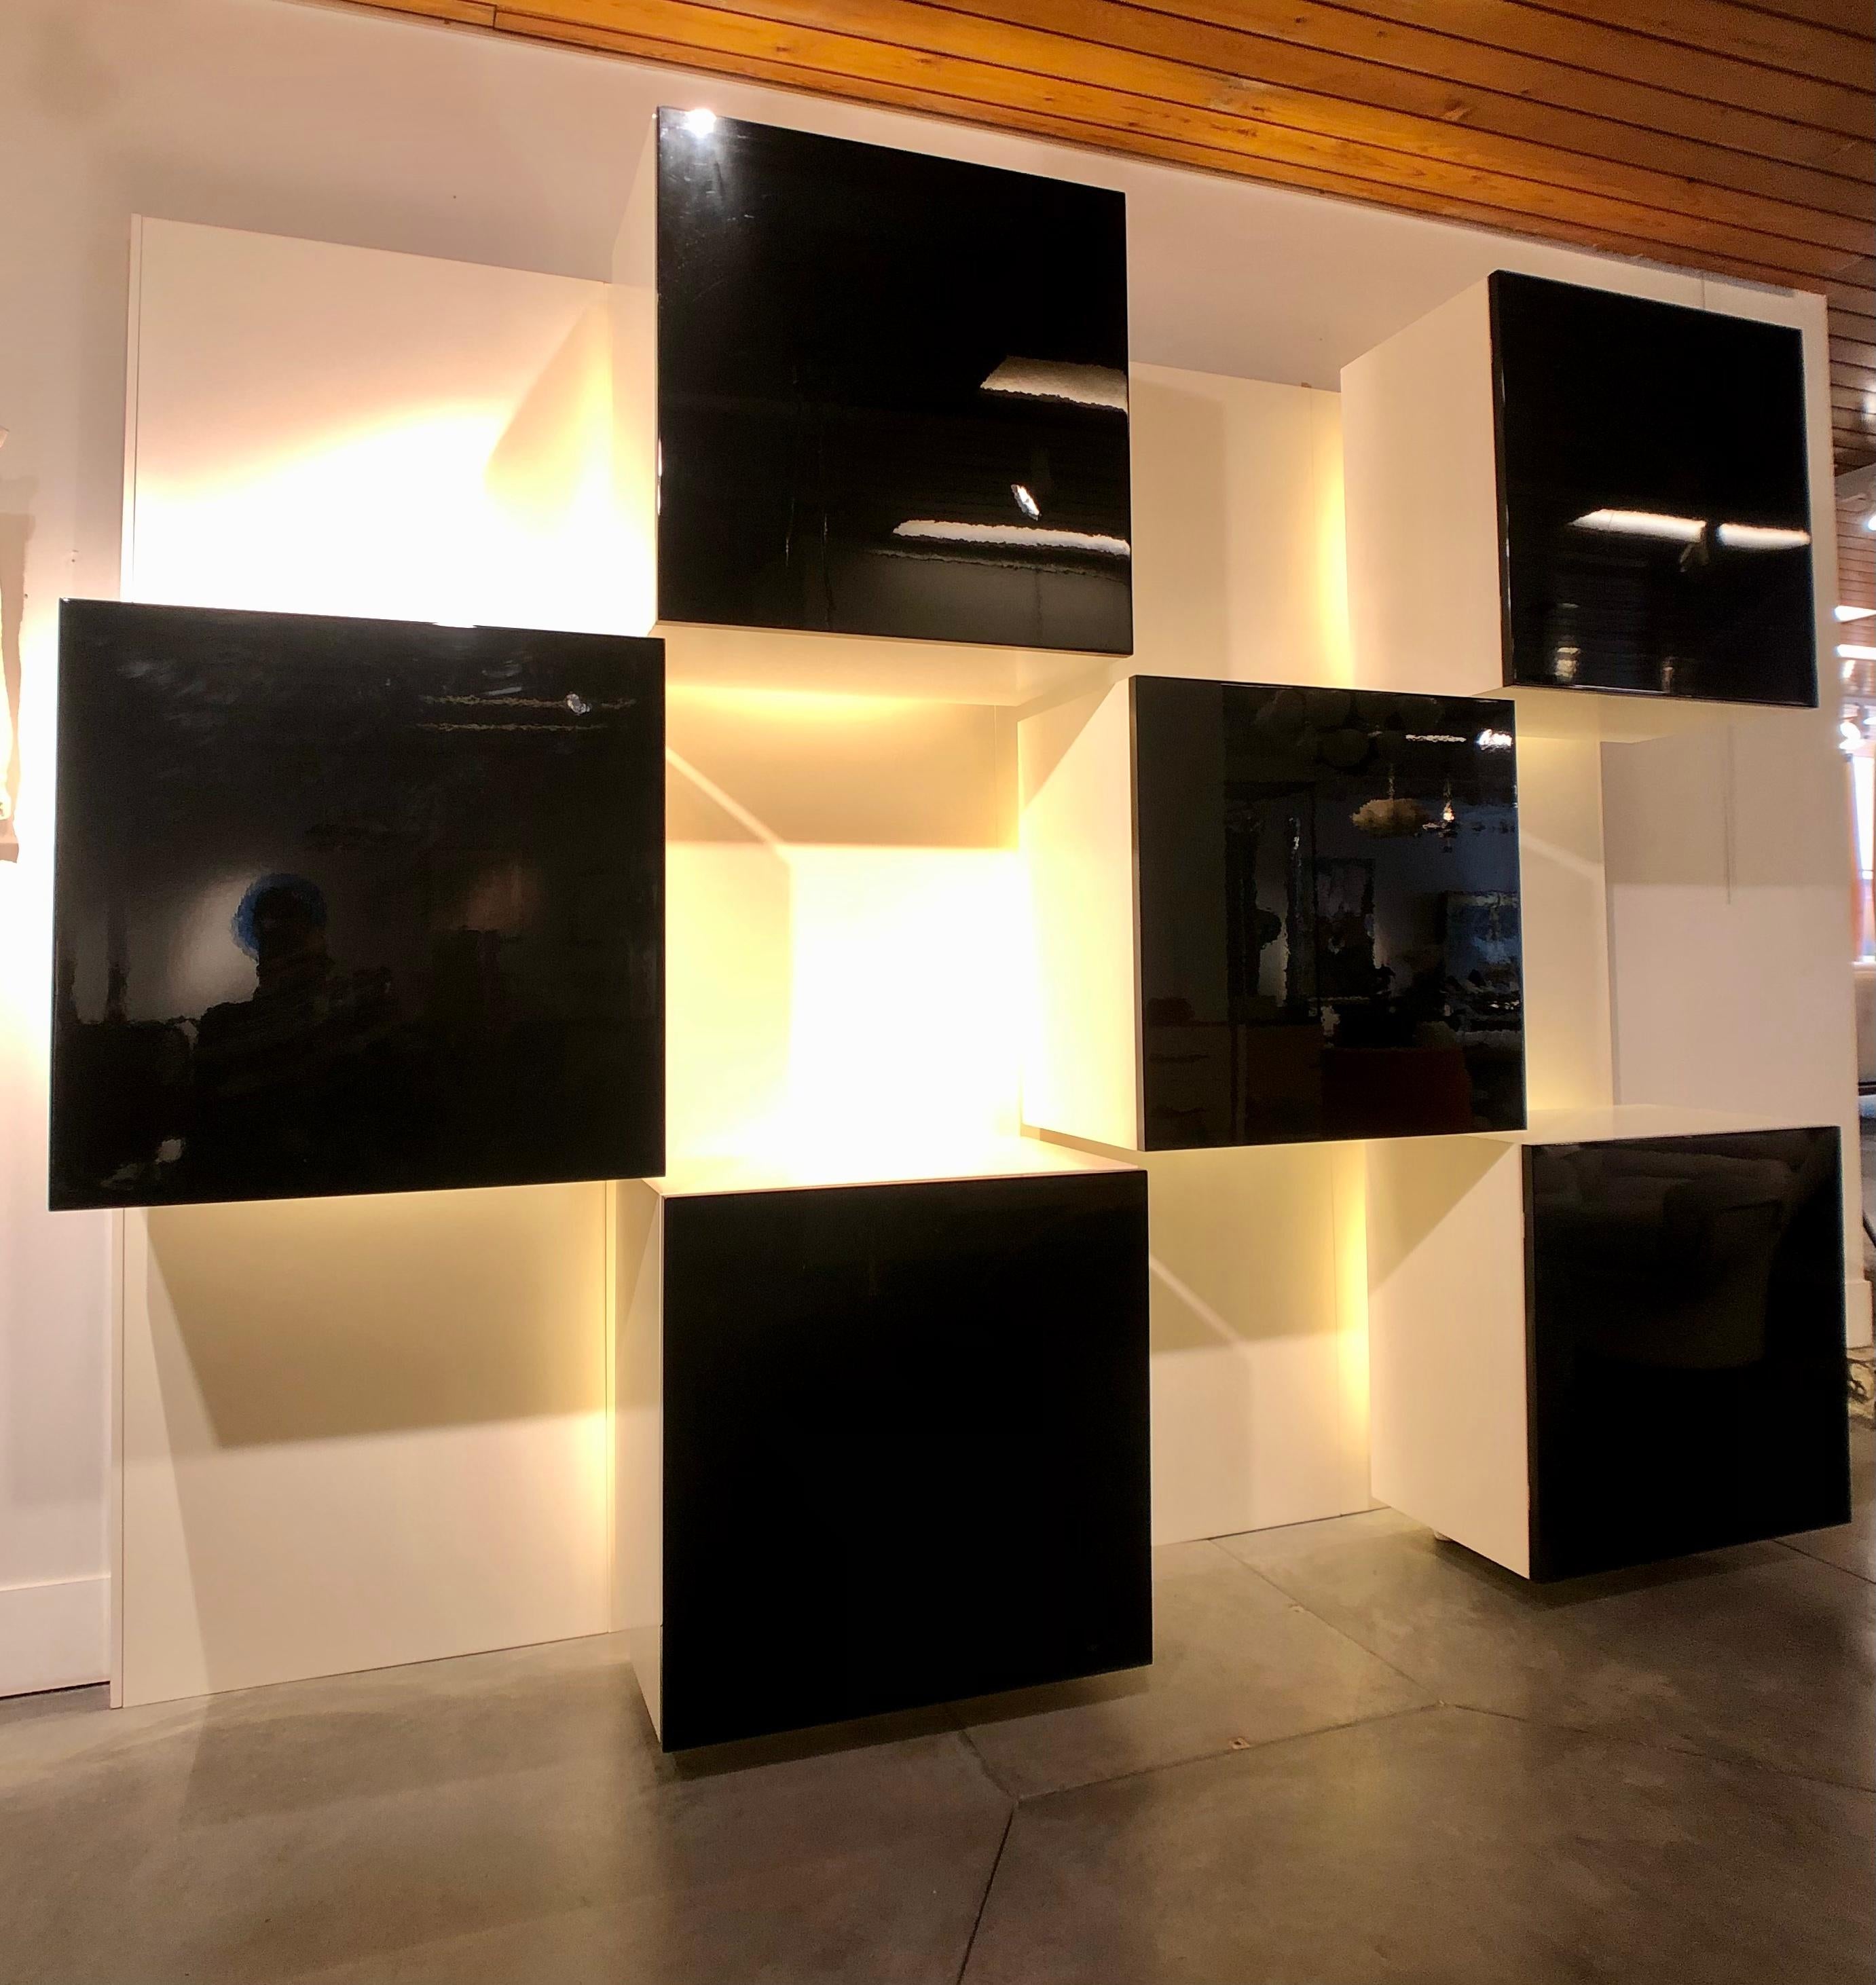 Roberto Monsani pour Acerbis, unité murale lumineuse 
6 boîtes noires munies chacune d'une lumière et fixées sur 4 panneaux muraux blancs avec quelques fixations en plexi donnant une impression de mobilier flottant.
Bon état général une trace est